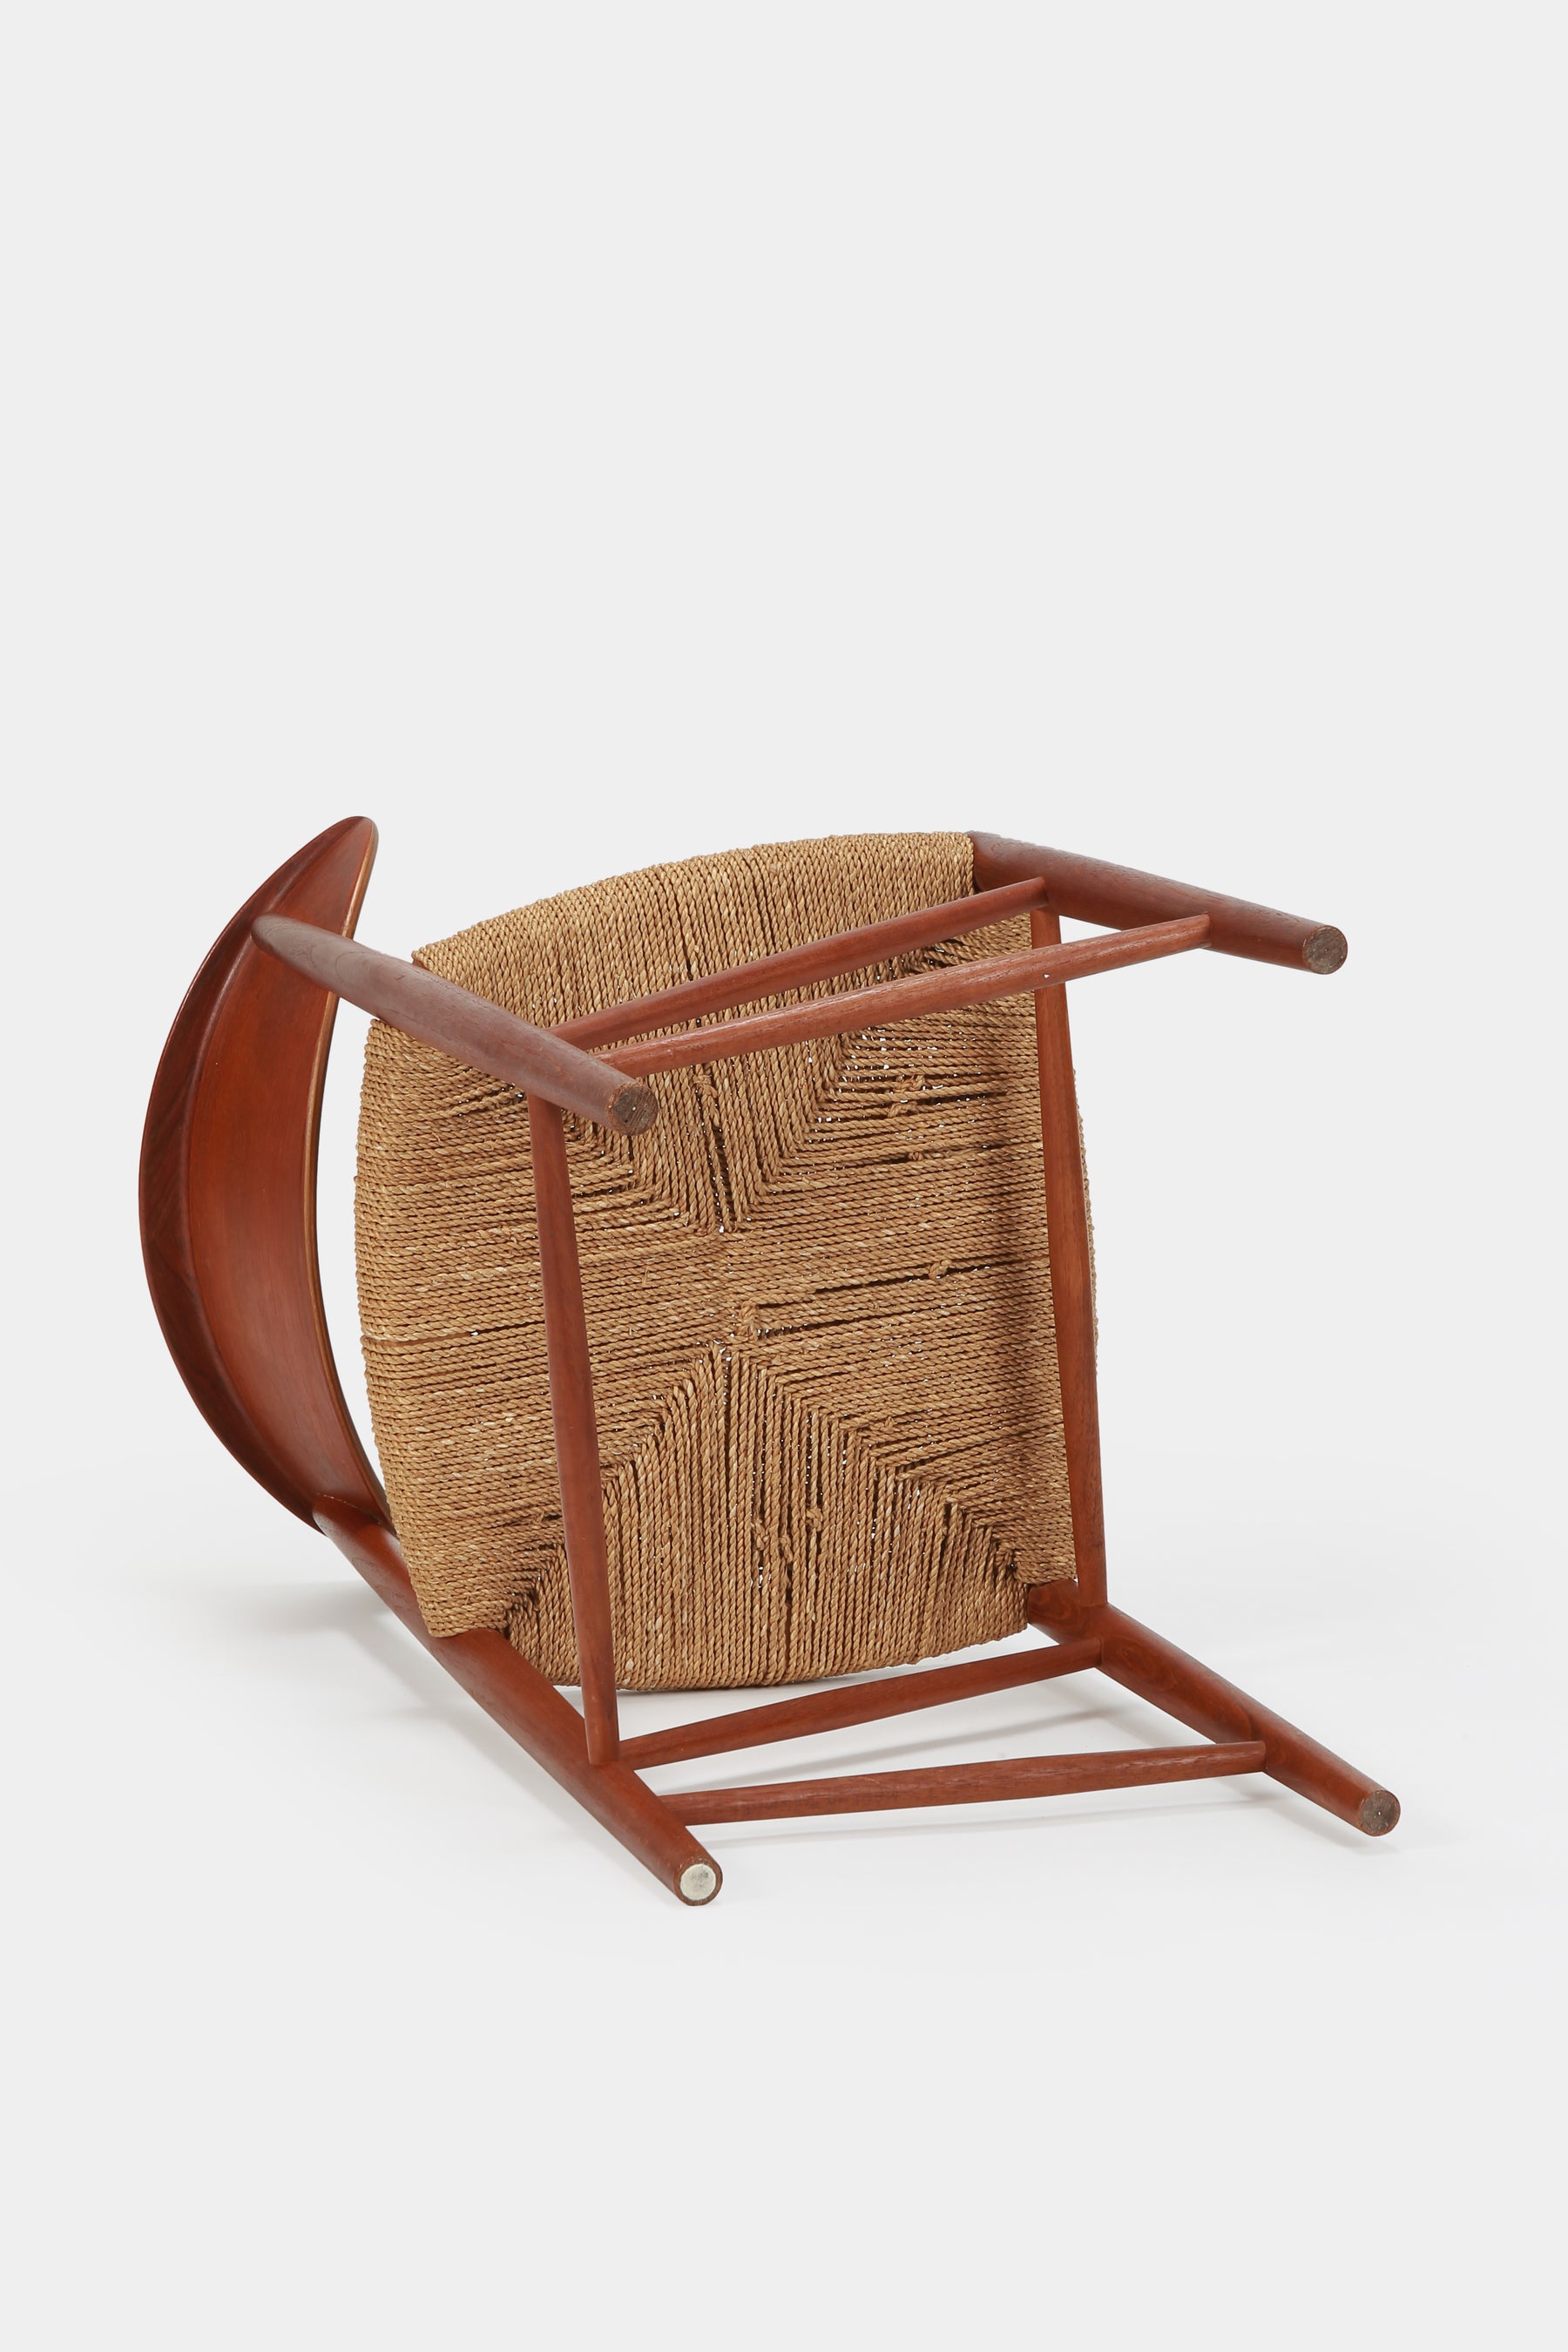 Hvidt & Mølgaard Single Chair, teak wood, 50s